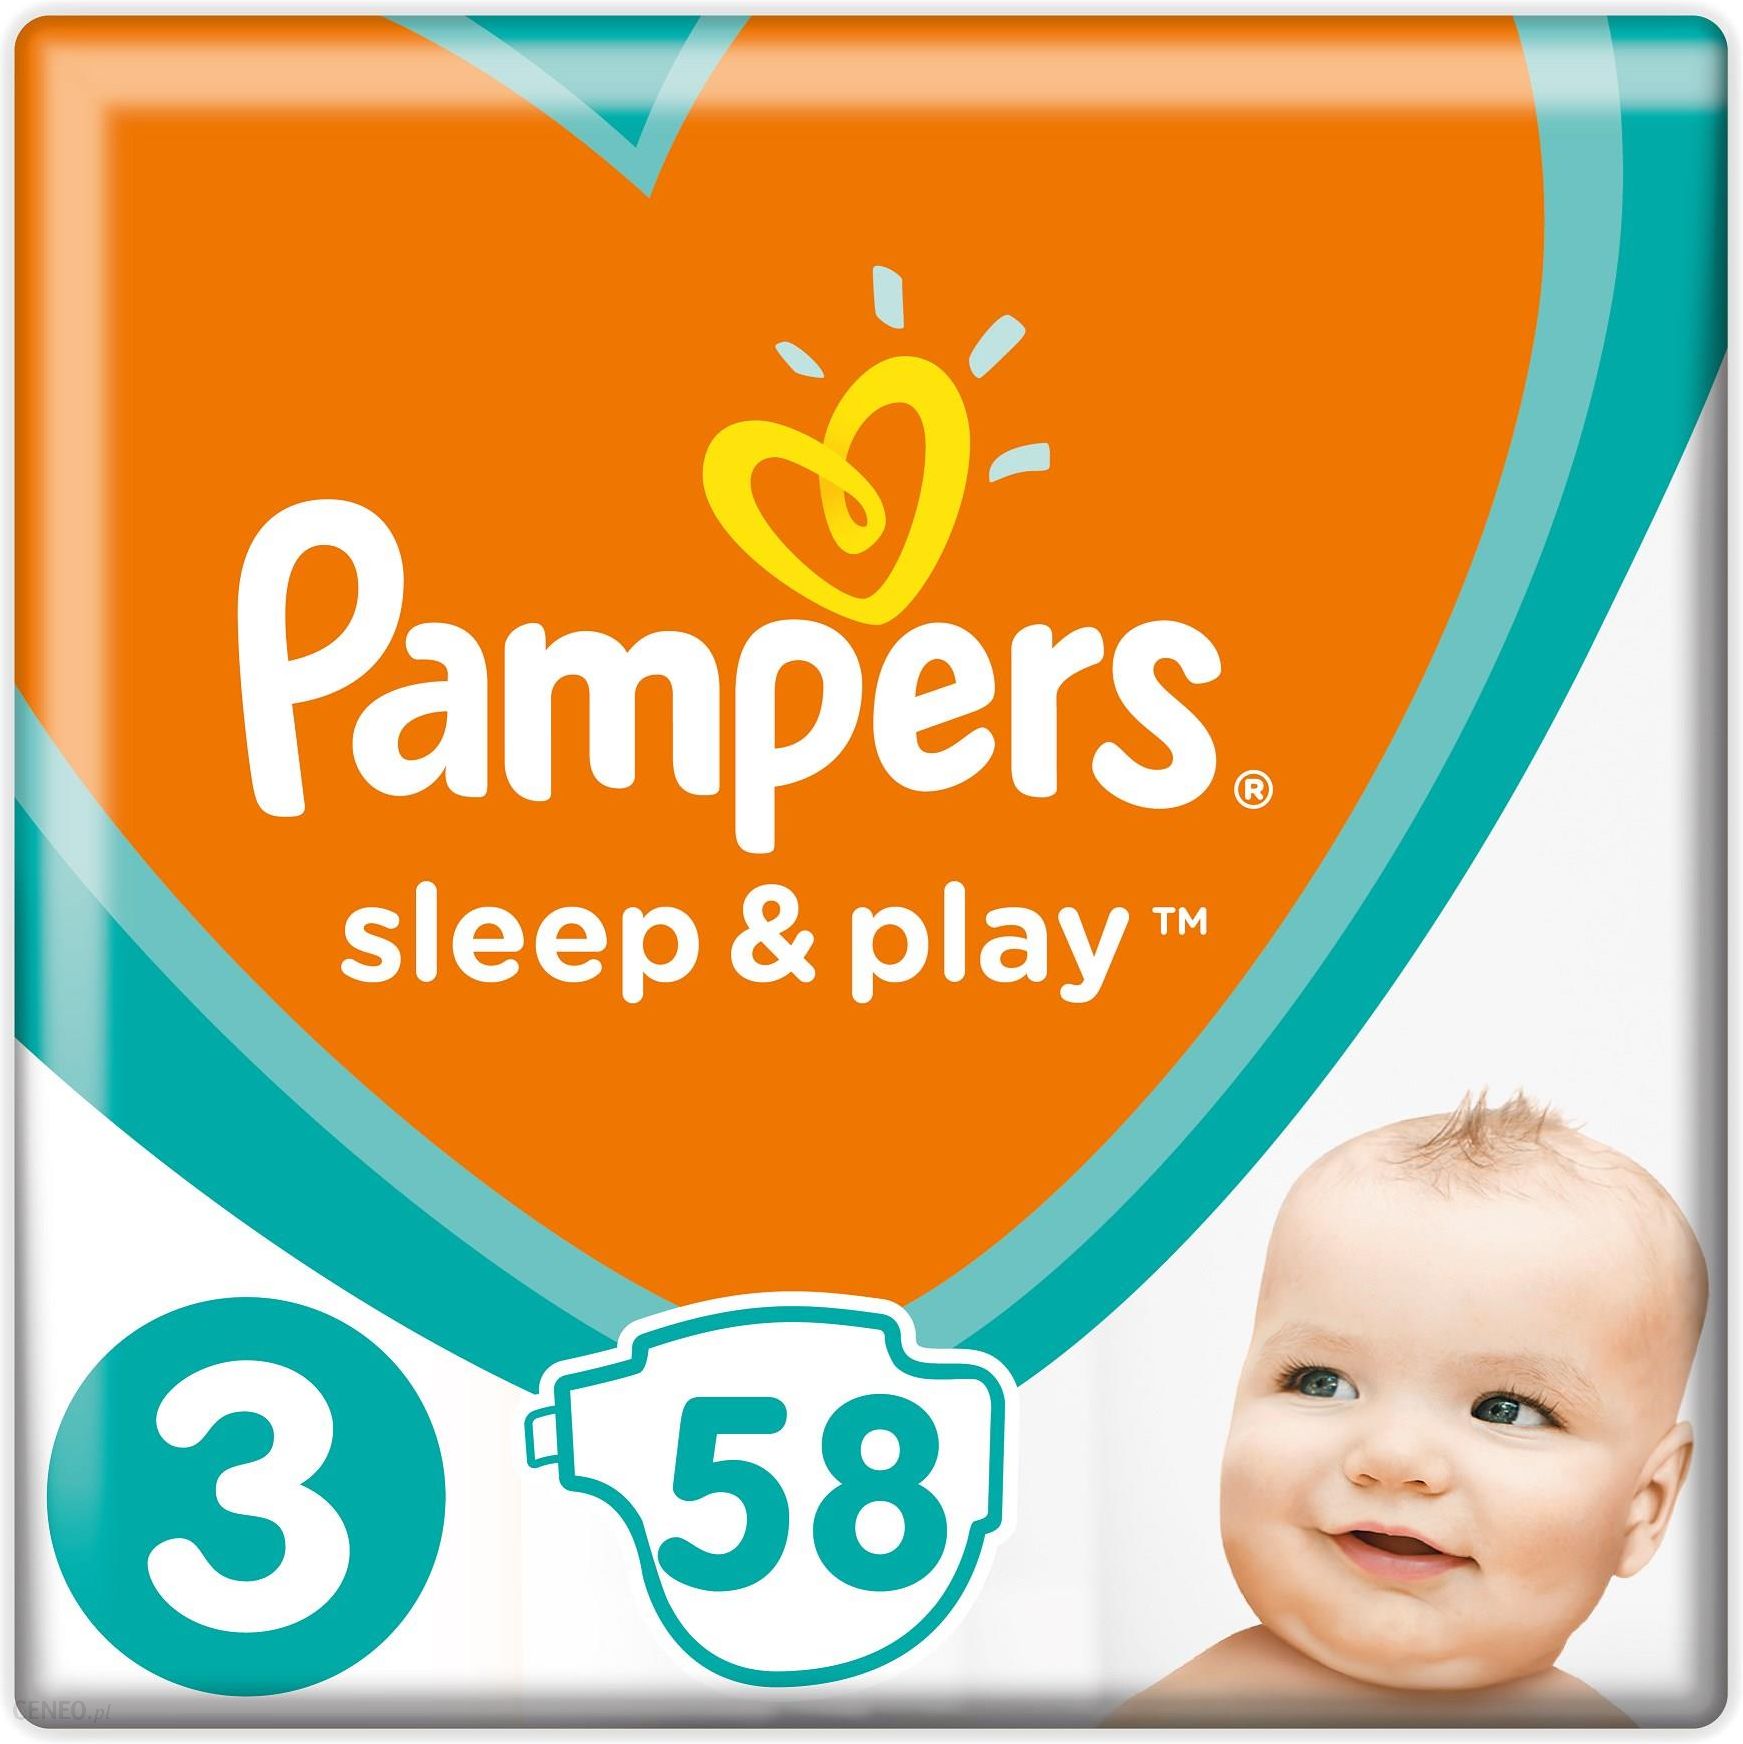 pampers sleep &play opinie